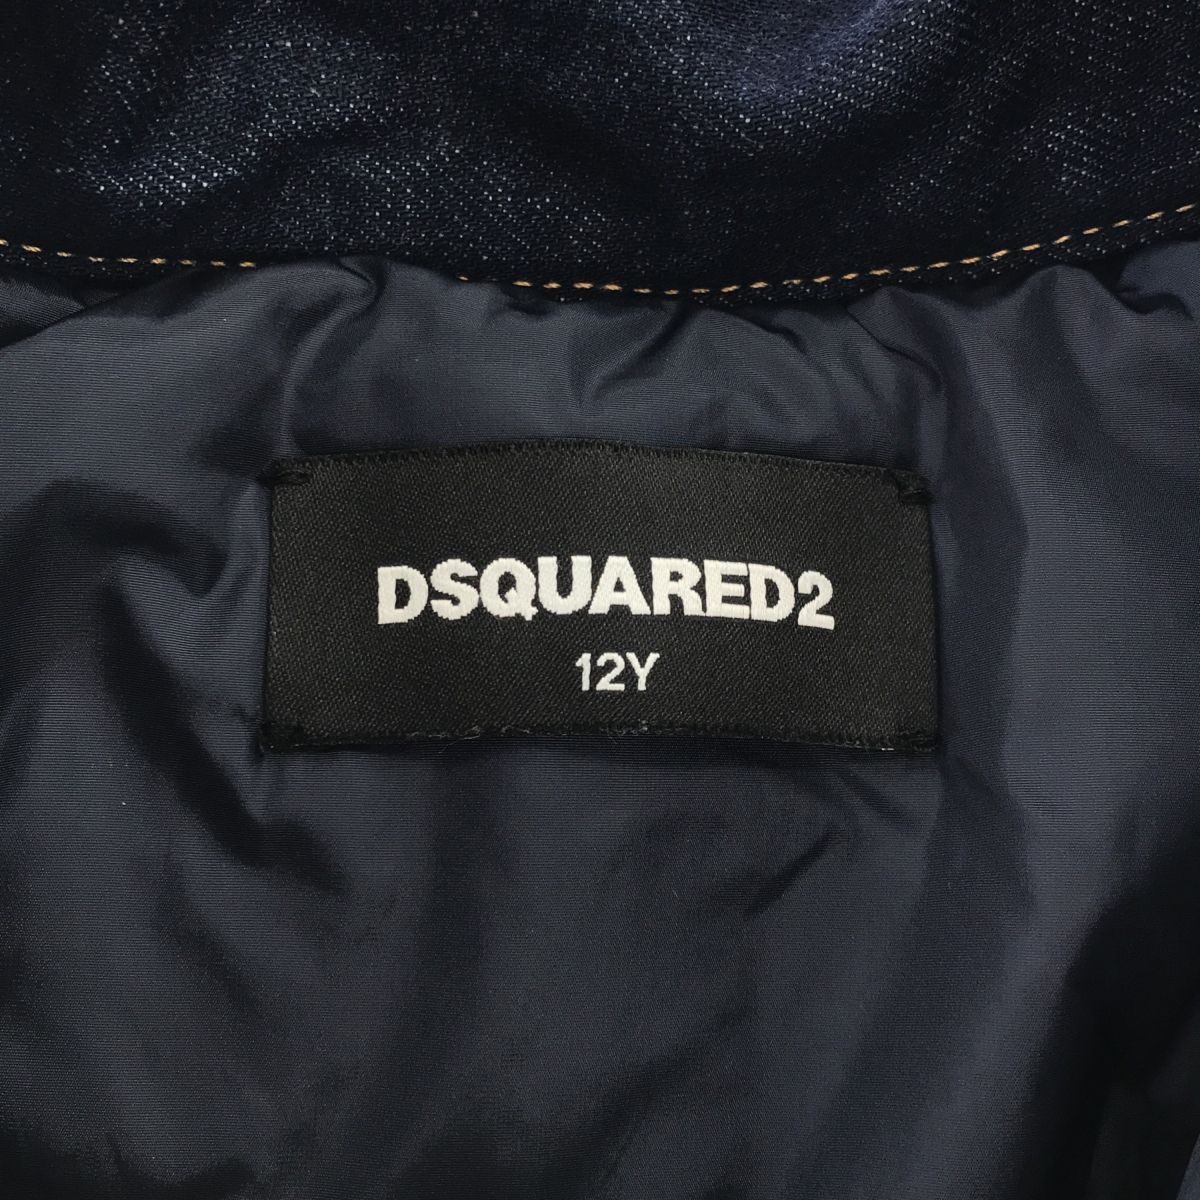 DSQUARED2 ディースクエアード デニム DQ02WL ジャケット ダウン アウター キッズサイズ 12Y アパレル 子供服